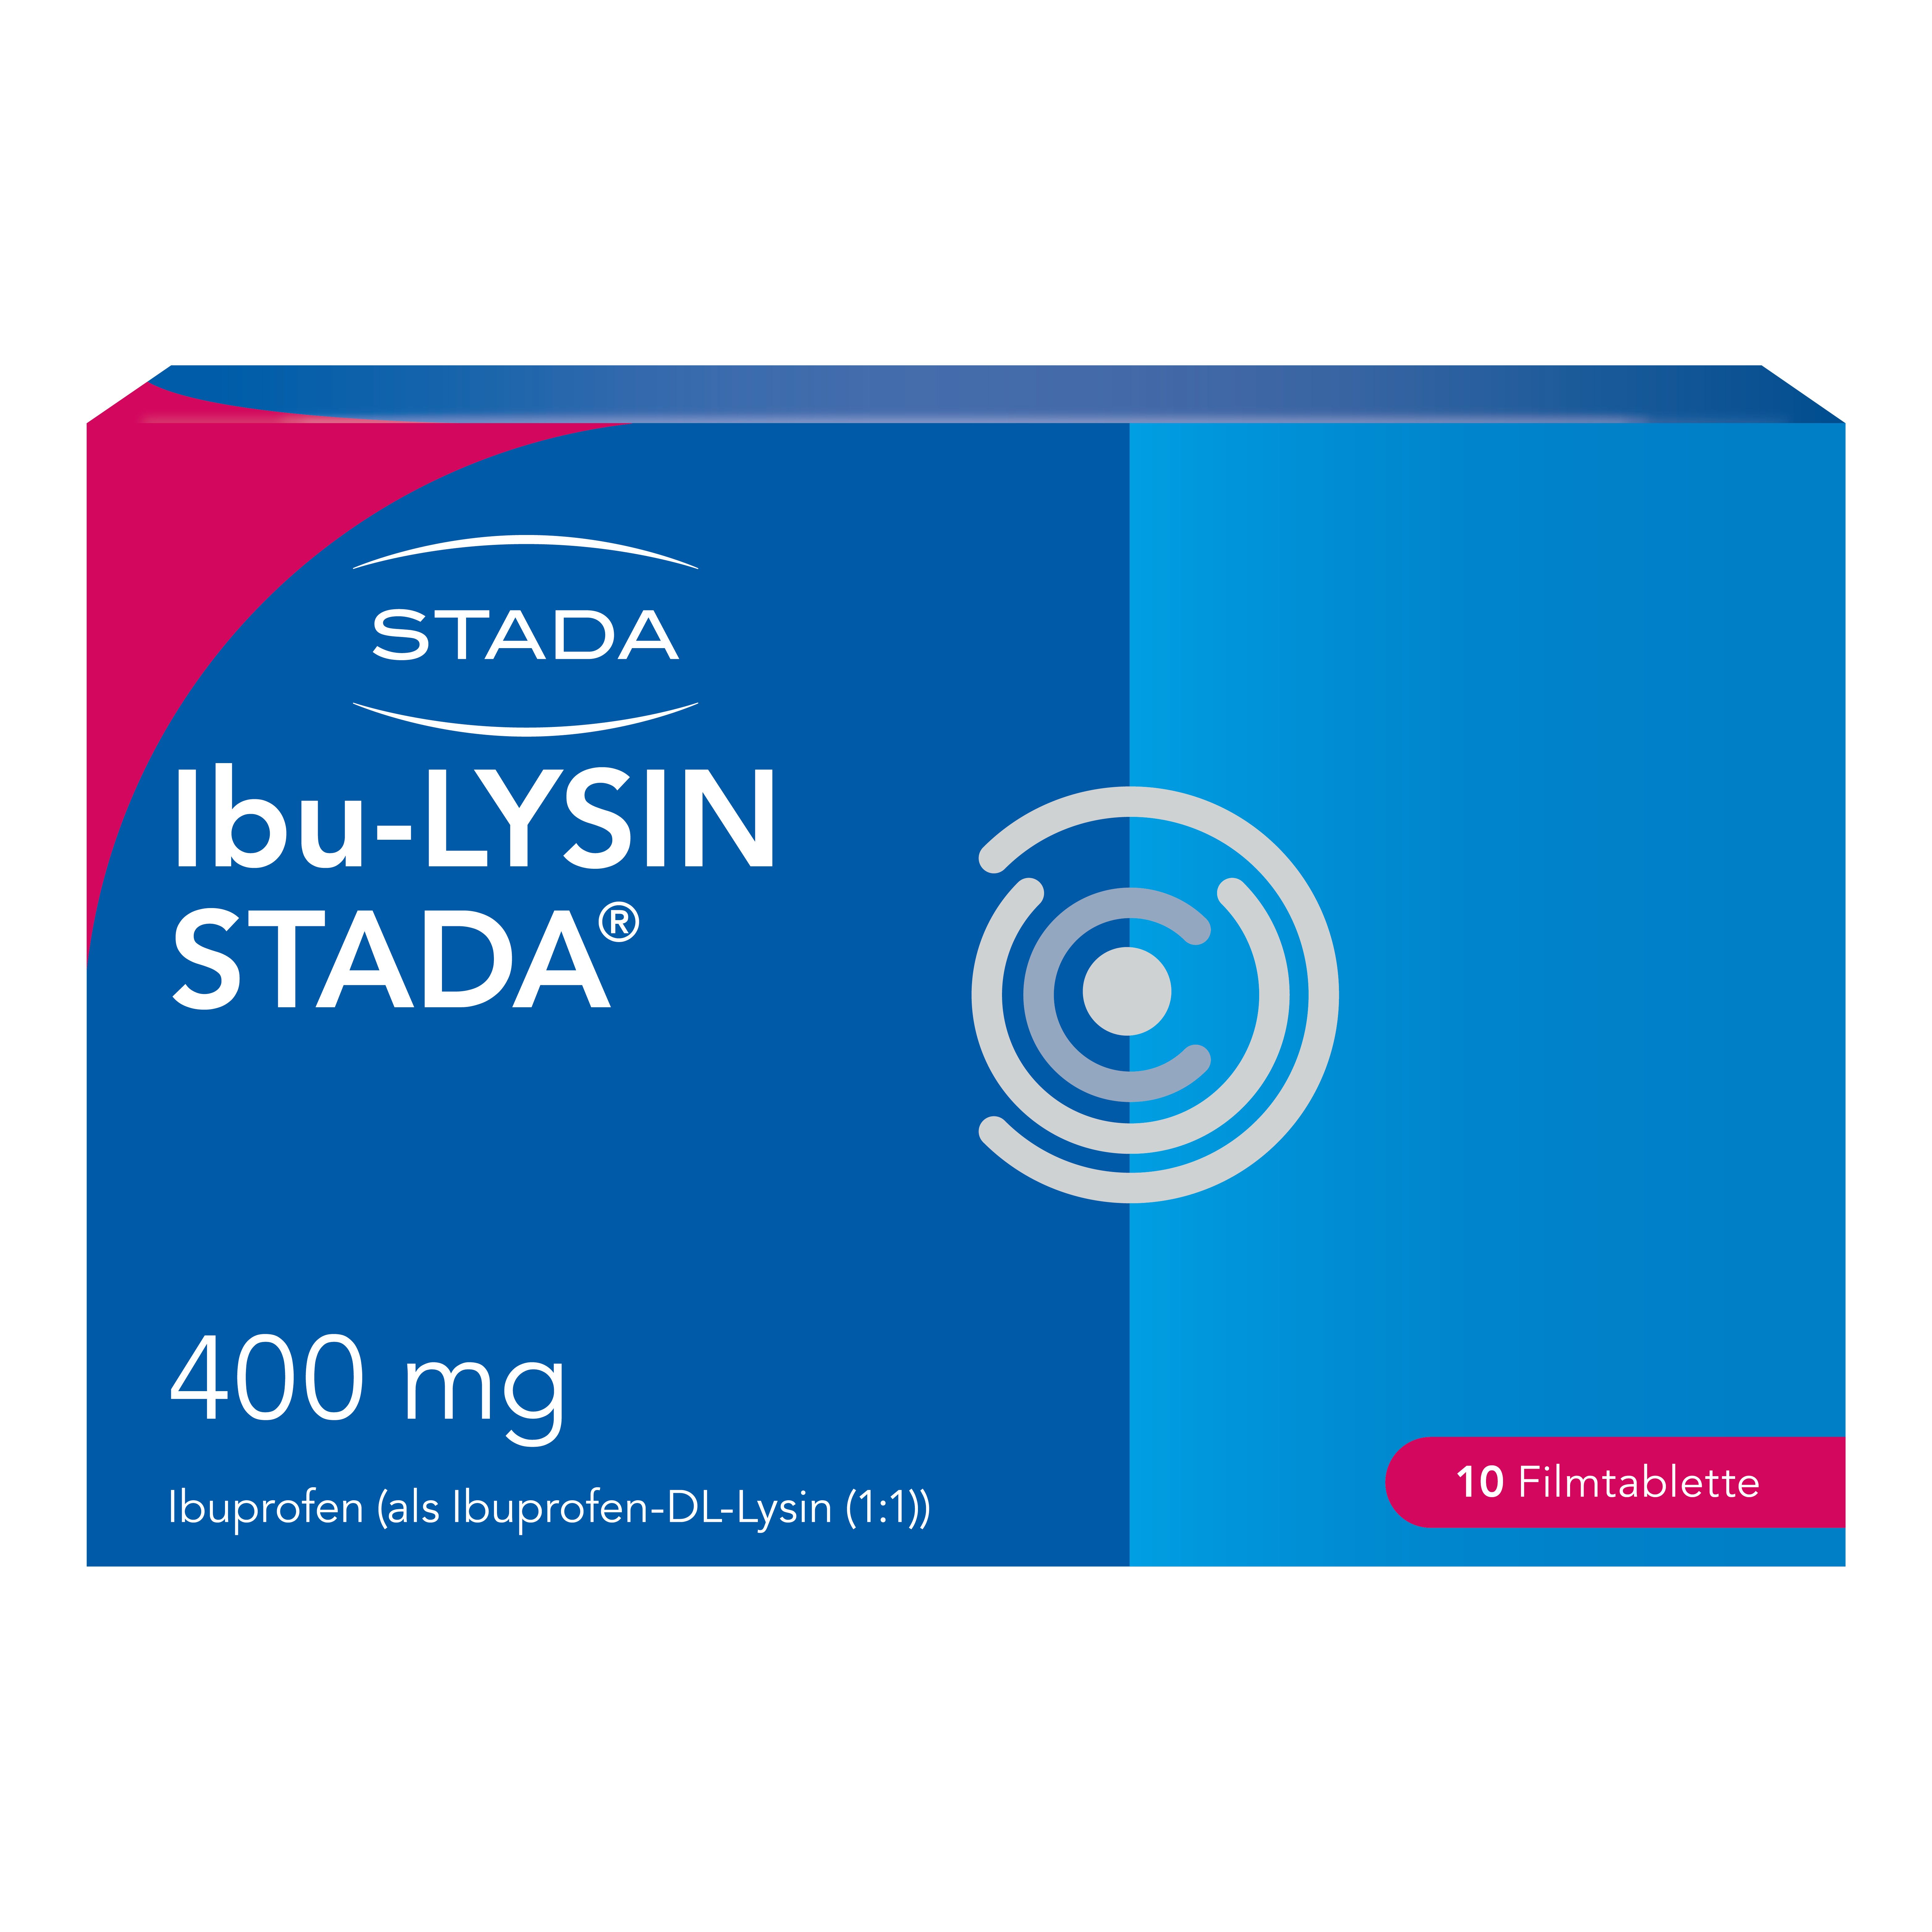 Ibu-LYSIN Stada® 400 mg Filmtabletten, wirksam bei Schmerzen und Fieber